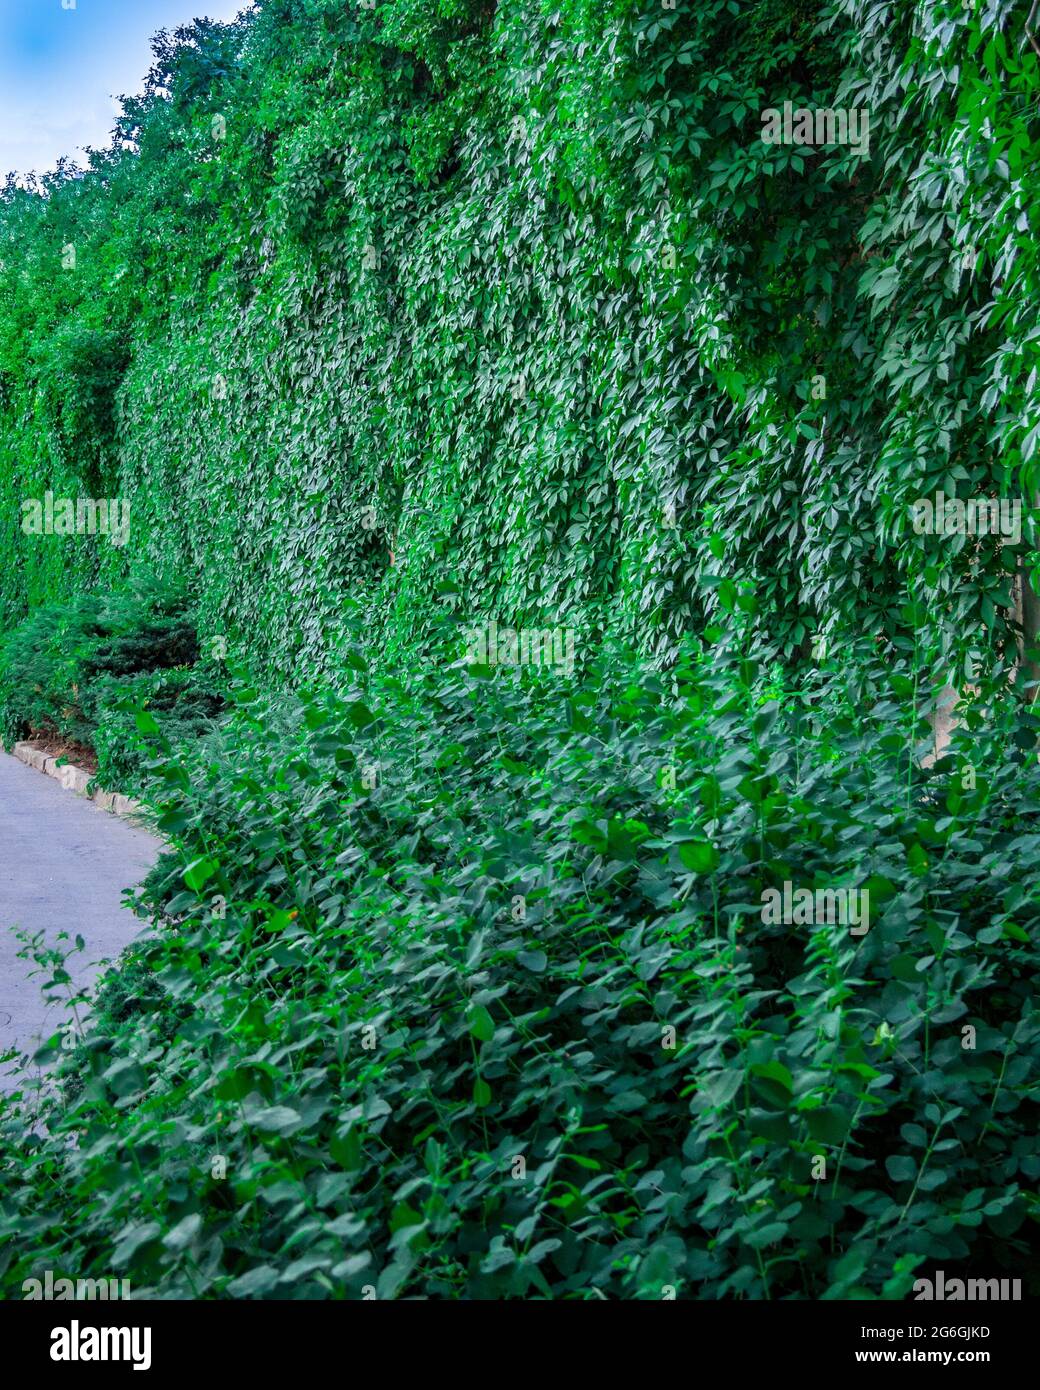 Virginia super-réducteur (Parthenocissus quinquefolia) - couvre tout le mur Banque D'Images